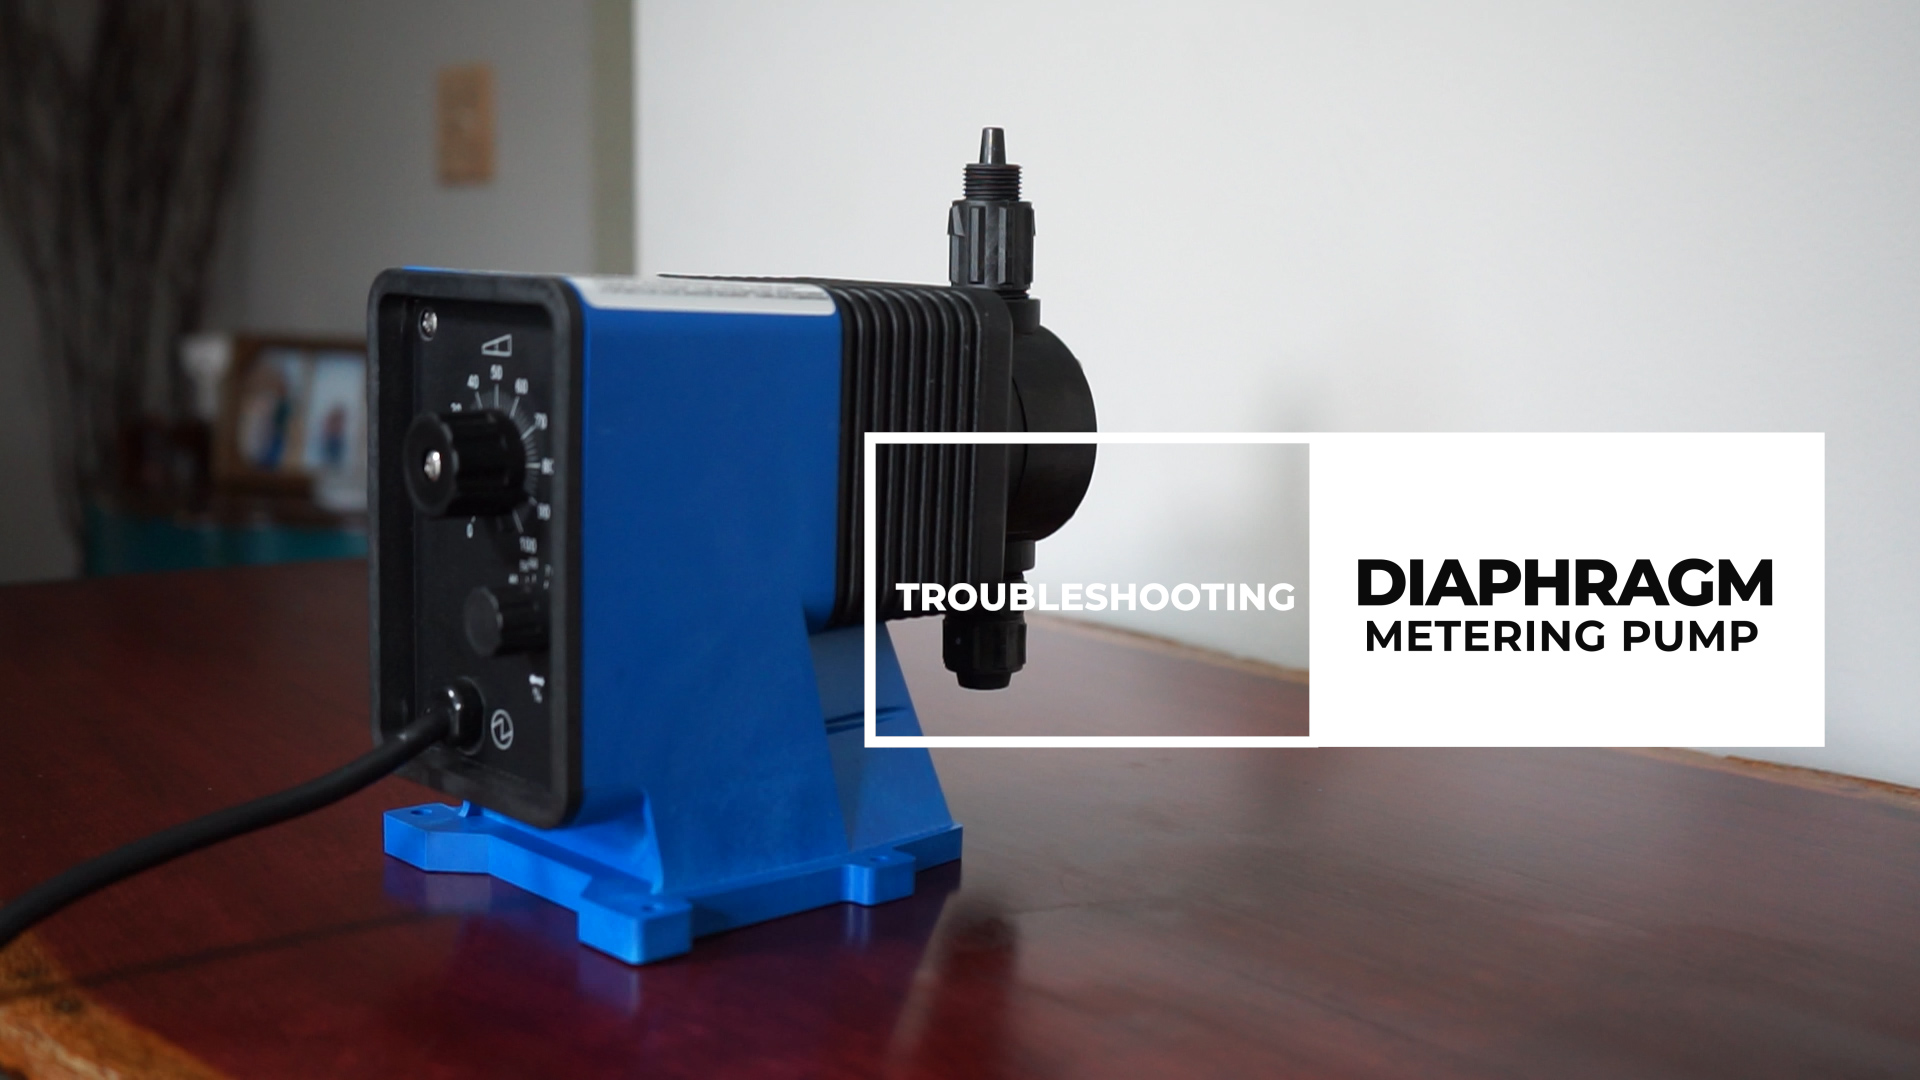 Troubleshooting Diaphragm Metering Pump